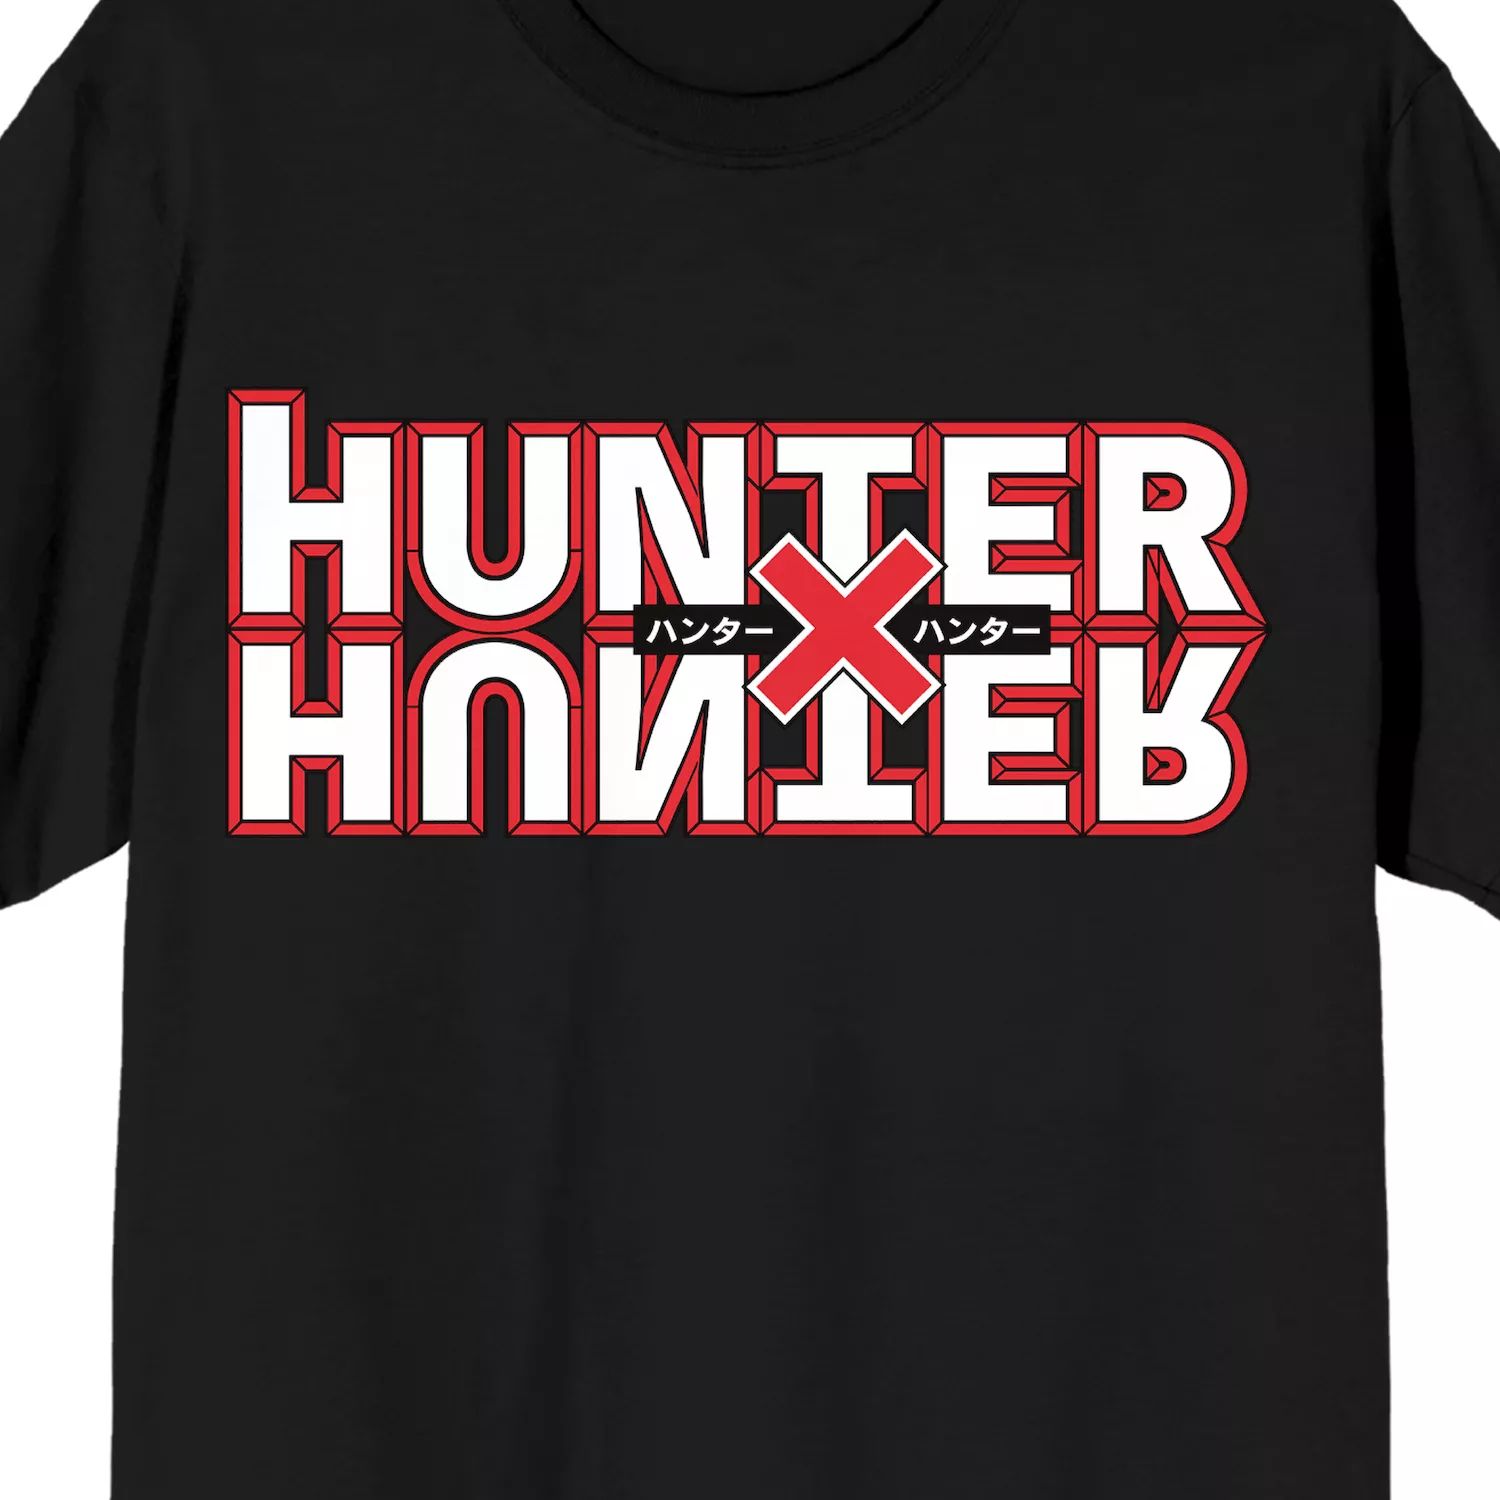 Мужская футболка Hunter x Hunter в стиле аниме Licensed Character толстовка мужская оверсайз с капюшоном винтажная повседневная уличная одежда с принтом японского аниме hunter x hunter hisoka свитшот в стиле манга